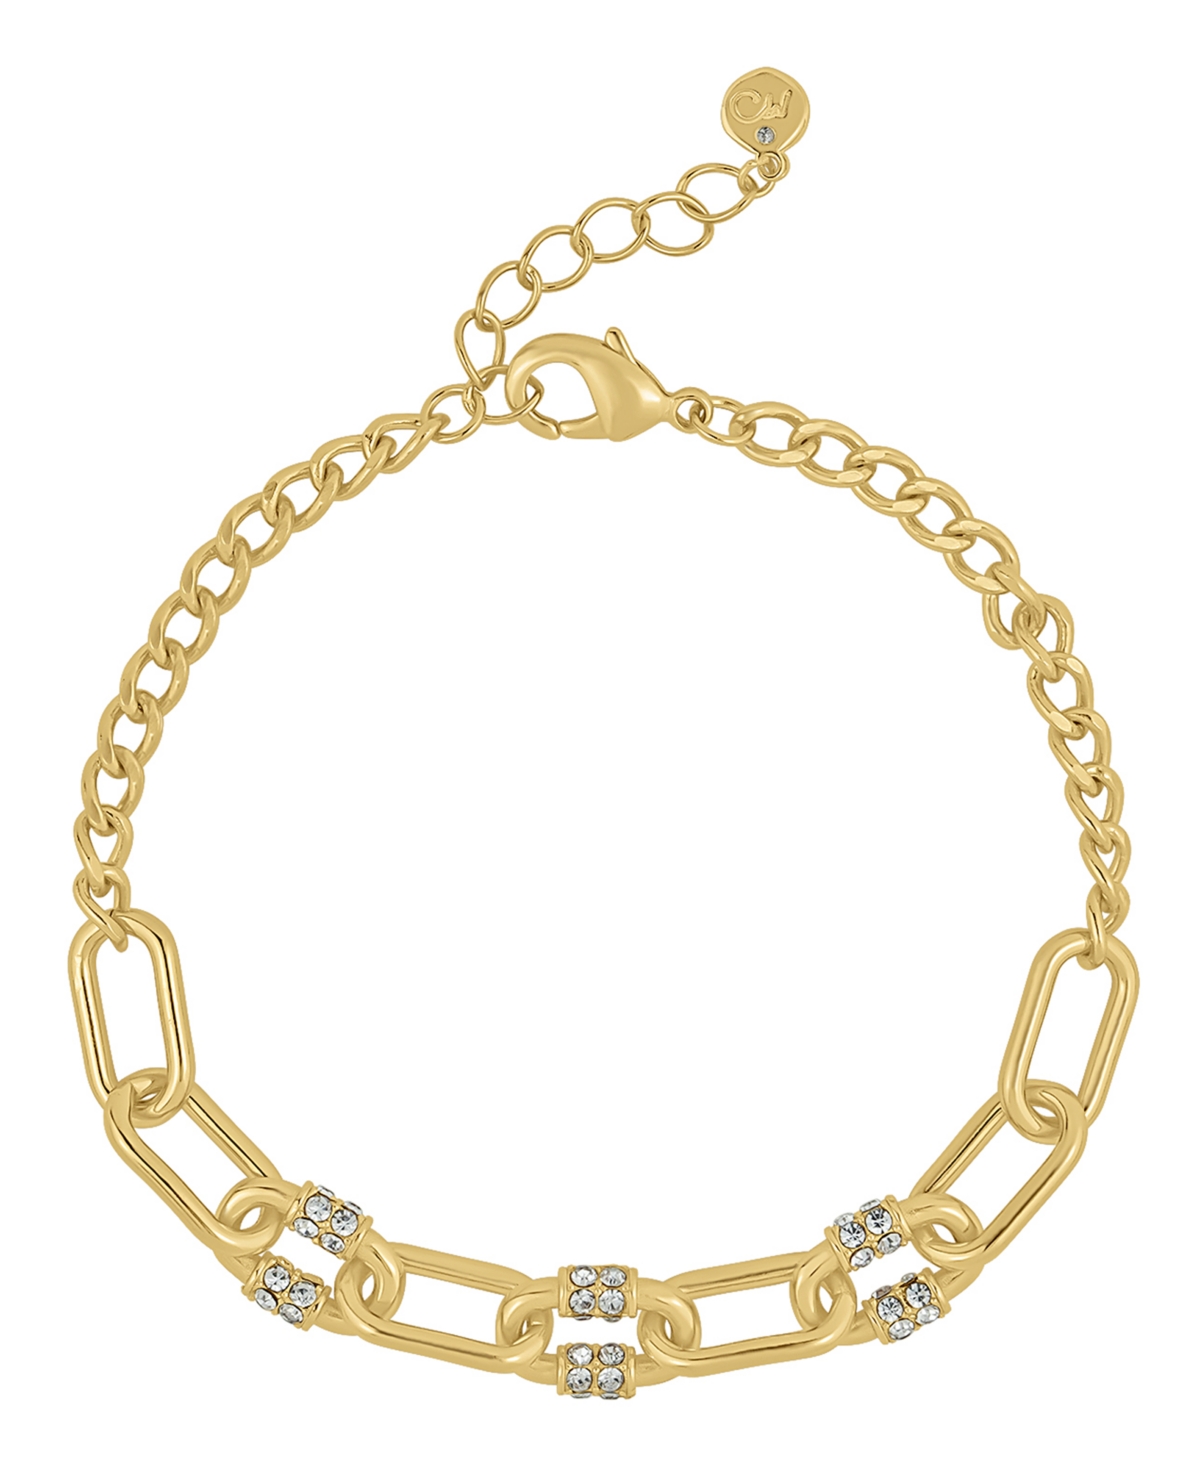 Crystal 18K Gold Plated Link Bracelet - K Gold Plated Over Brass